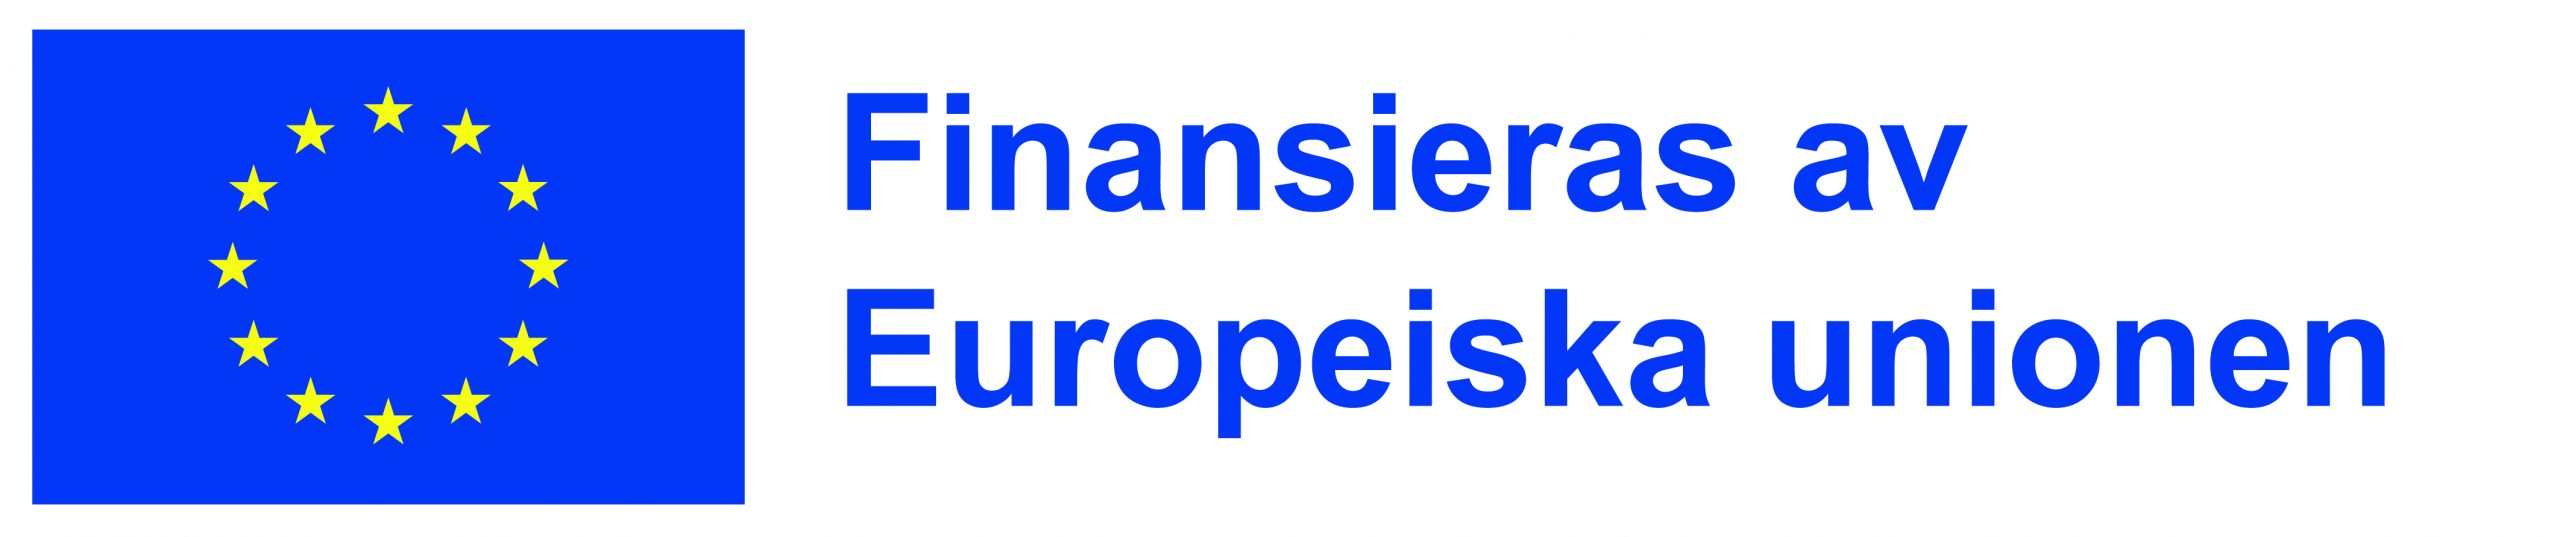 Logon för Finansieras av Europeiska unionen